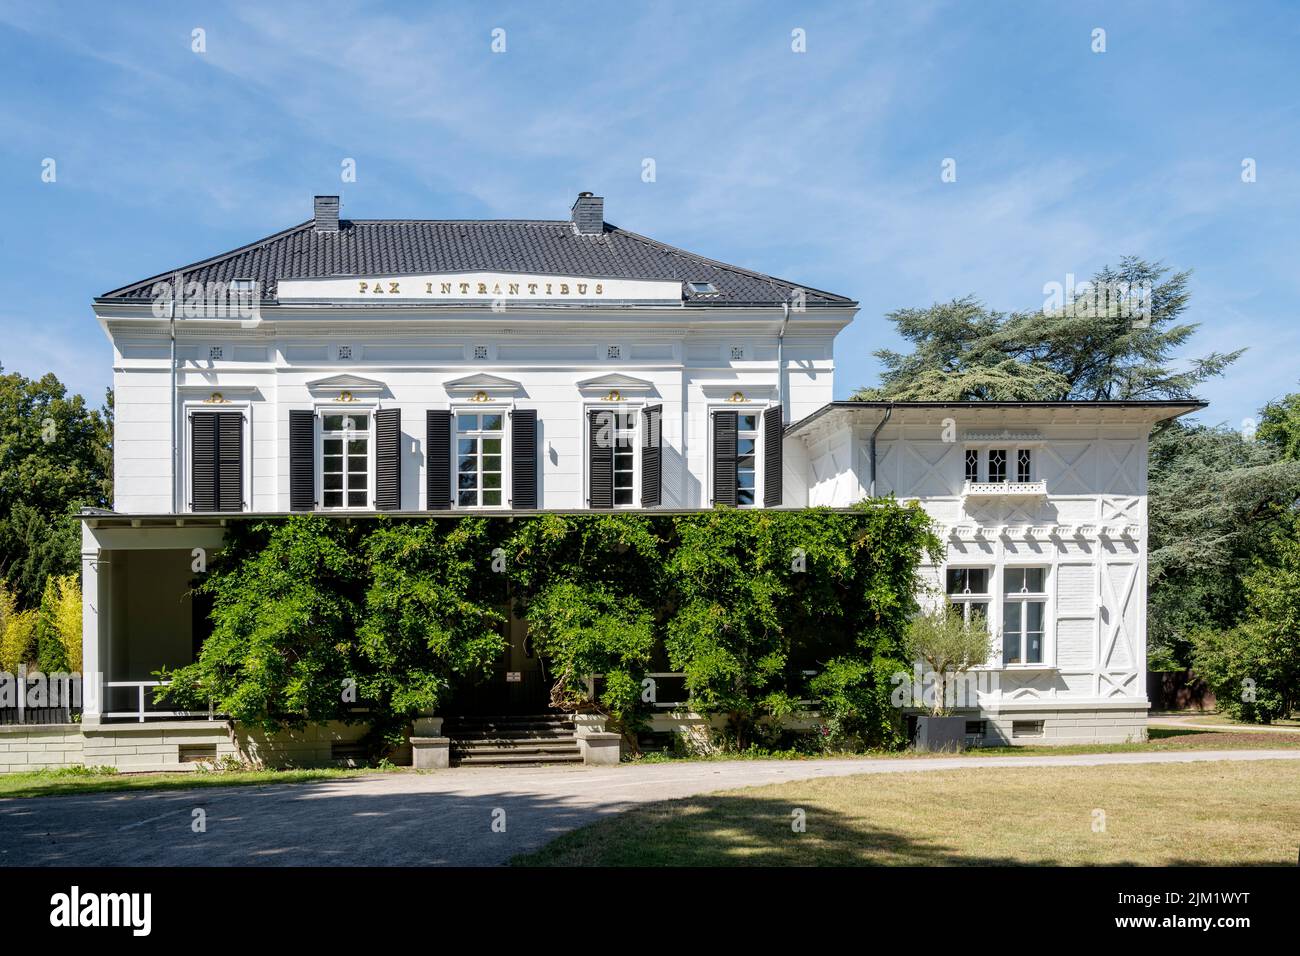 Deutschland, Düsseldorf, Villa Lantz, ein historisches Herrenhaus im Düsseldorfer Stadtteil Lohausen. Das seit 1982 unter Denkmalschutz stehende Gebäu Stock Photo